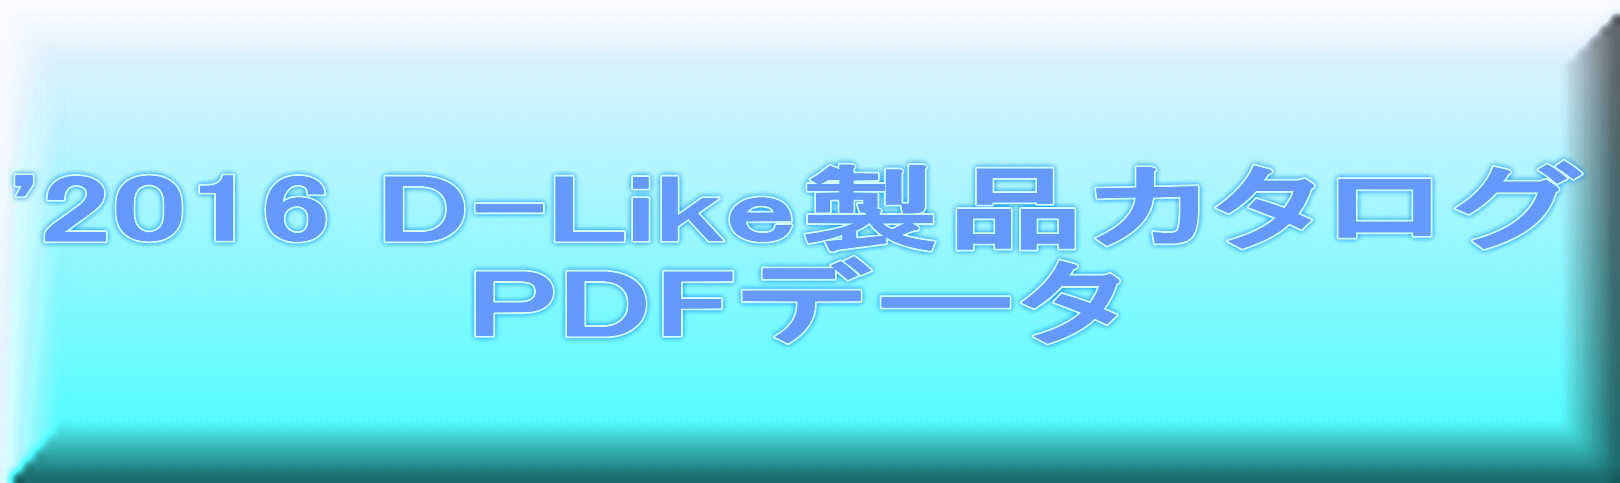 '2016 D-Like製品カタログ PDFデータ